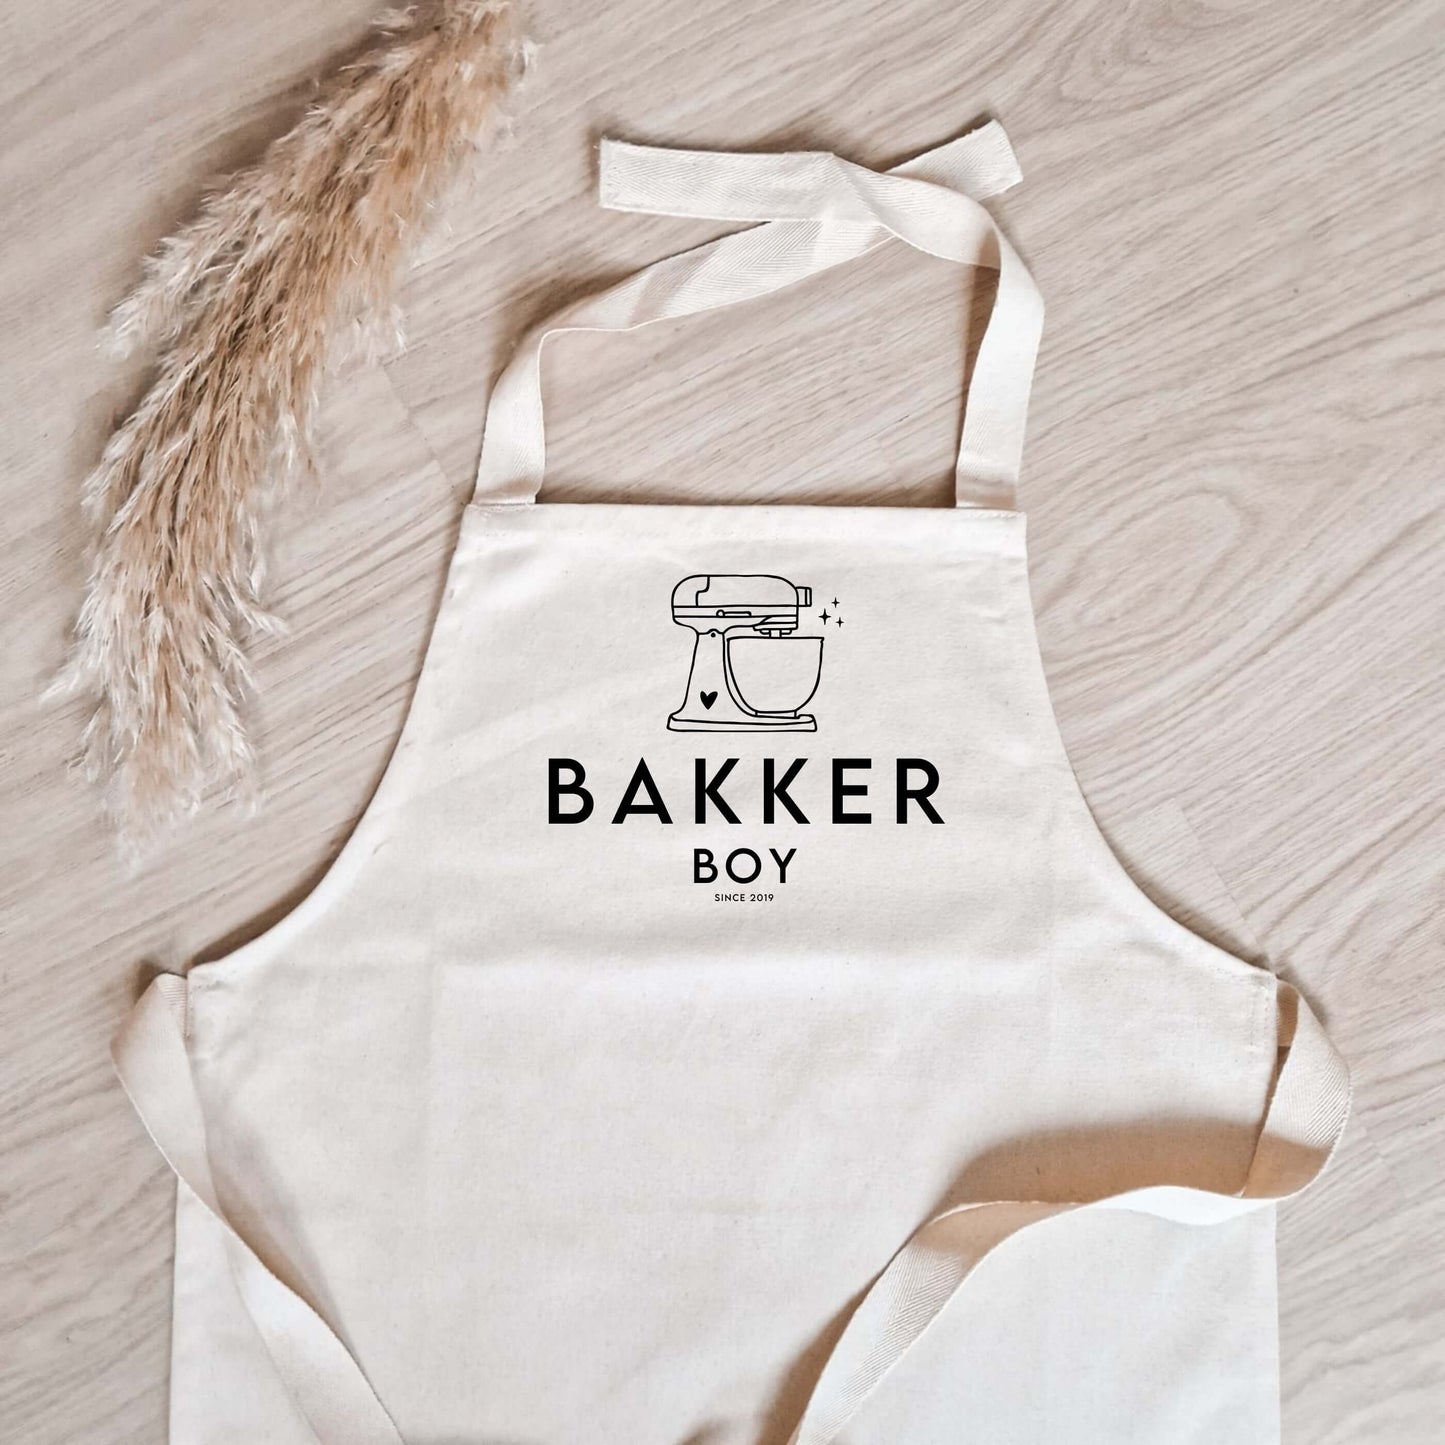 katoenen kinderschort met naam, keukenmixer met daaronder "Bakker" en zijn of haar naam en geboortejaar (close-up foto)